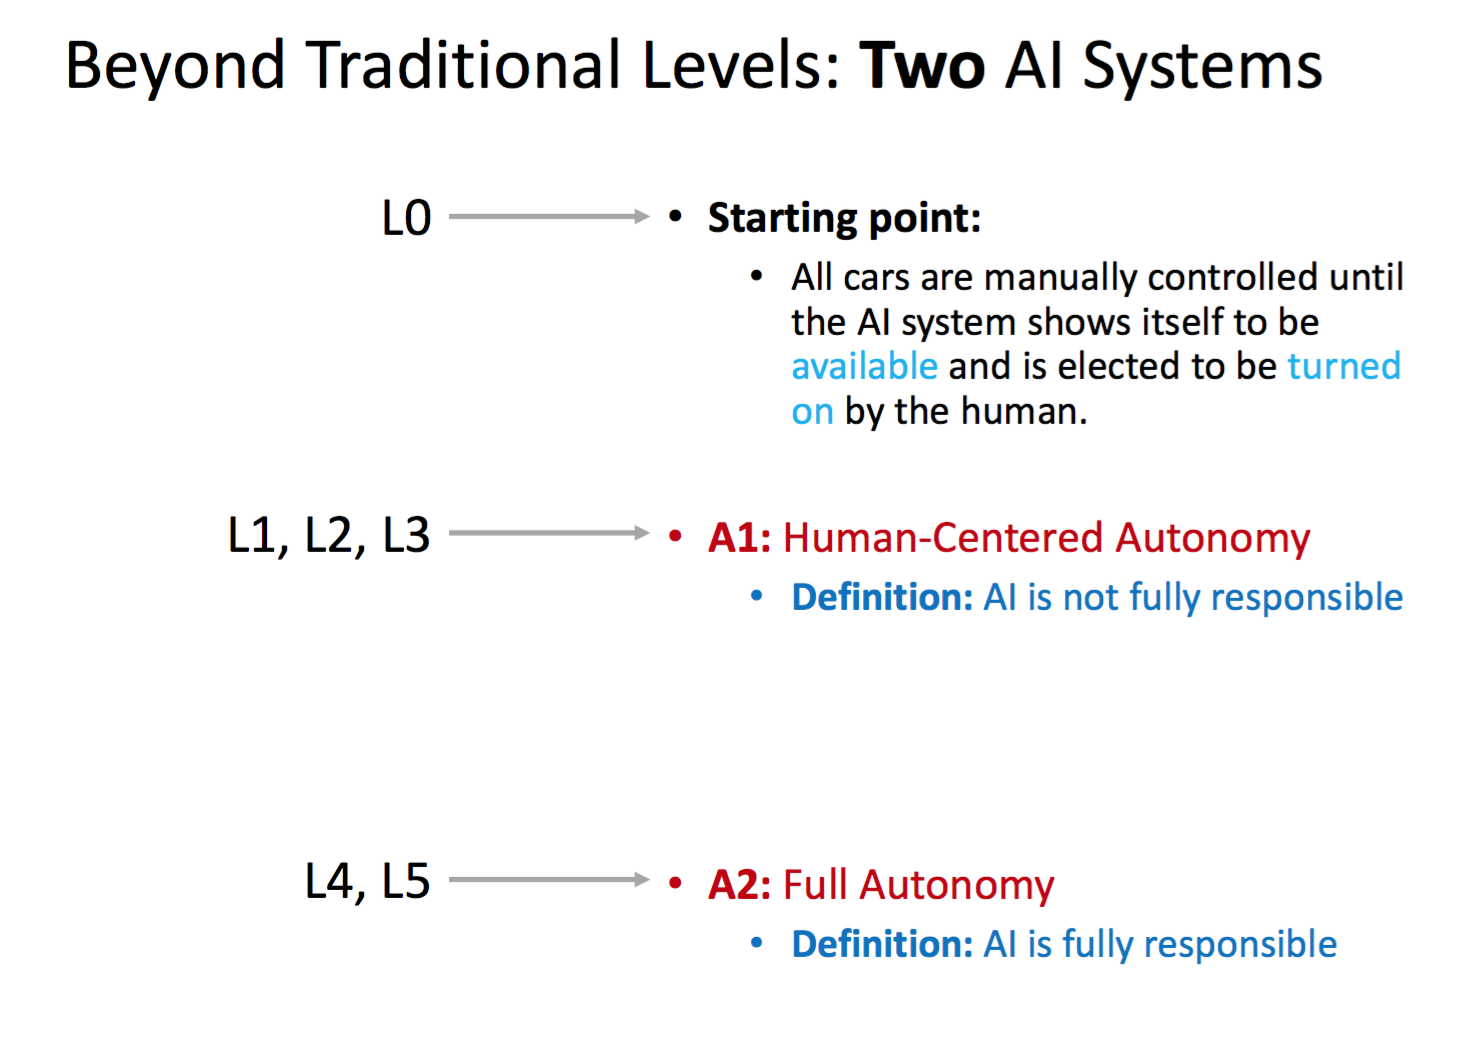 Human Autonomy vs Full AI